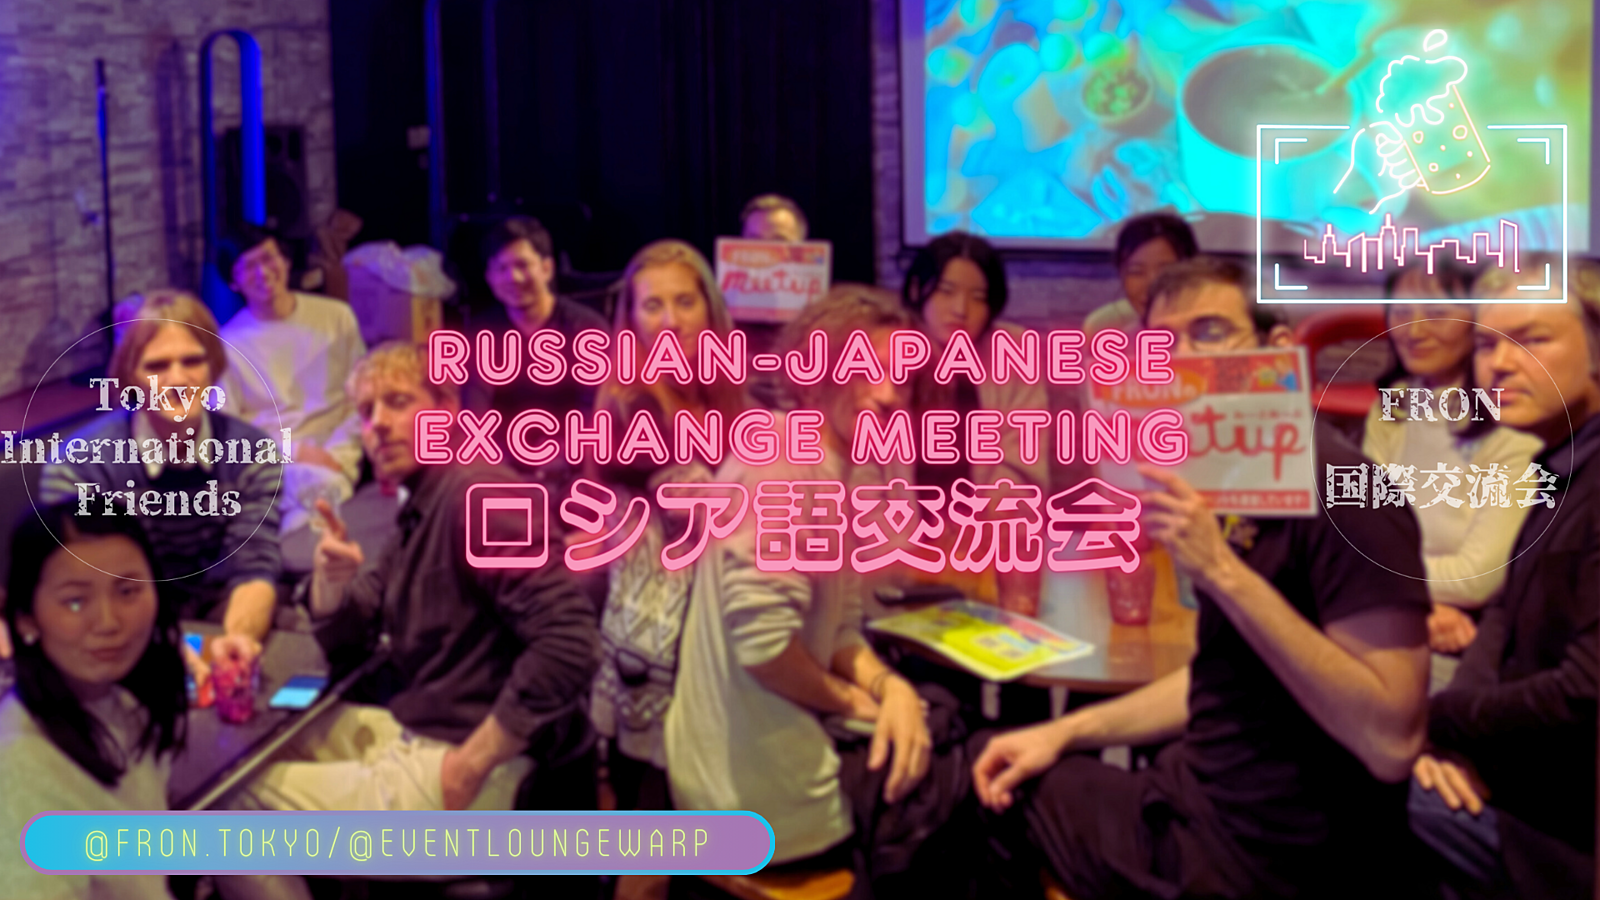  4/19(金)19:00~ ロシア語交流会 🇷🇺 Russian-Japanese Exchange Meeting☆Пятница, 19 апреля♪